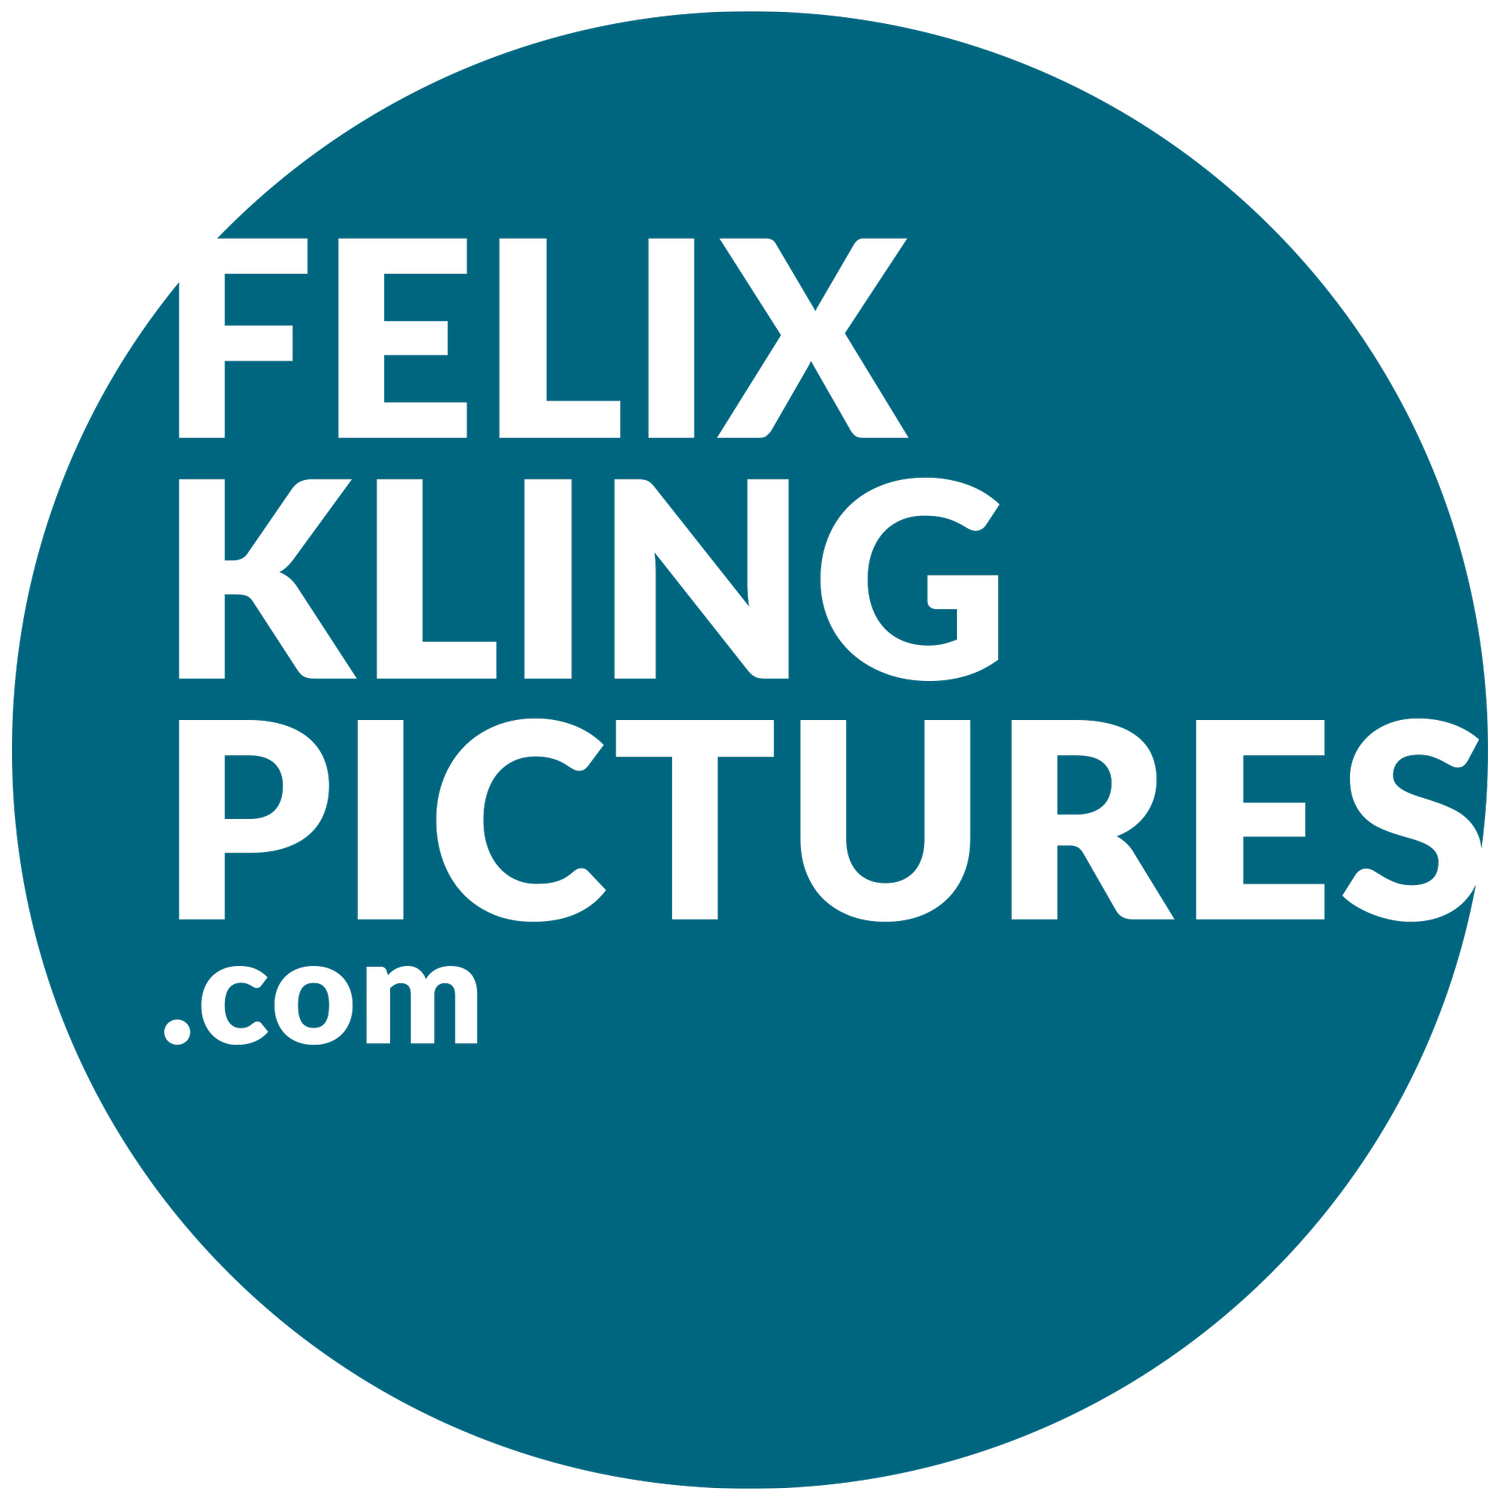 felixklingpictures.com